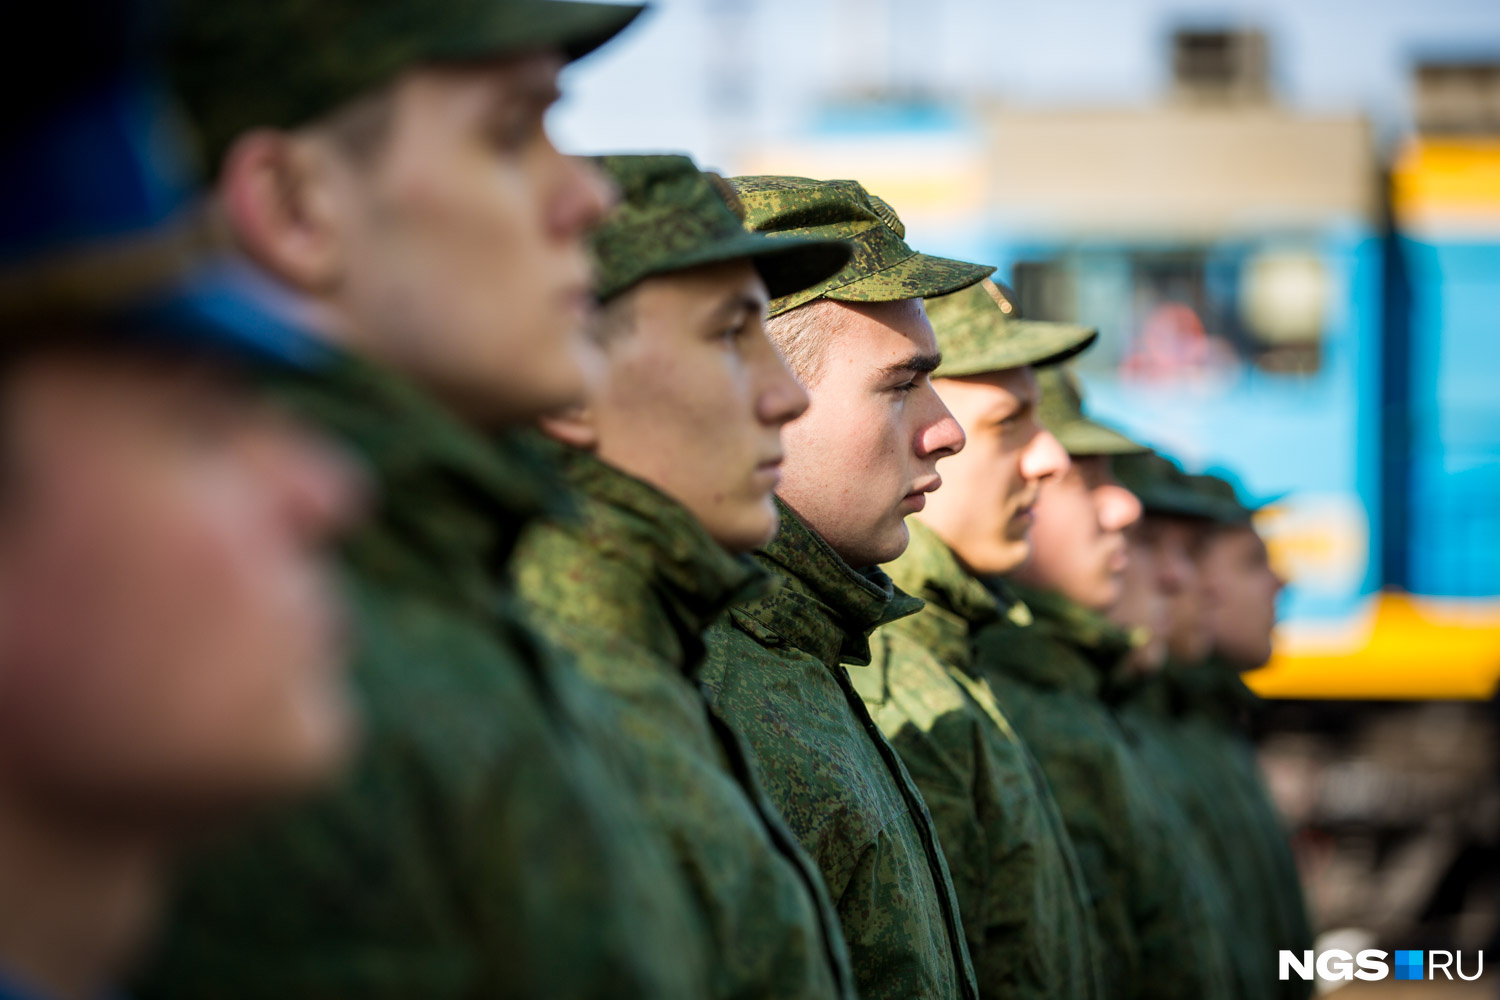 Студент-очник из Читы получил повестку о призыве в армию осенью 2022 г.